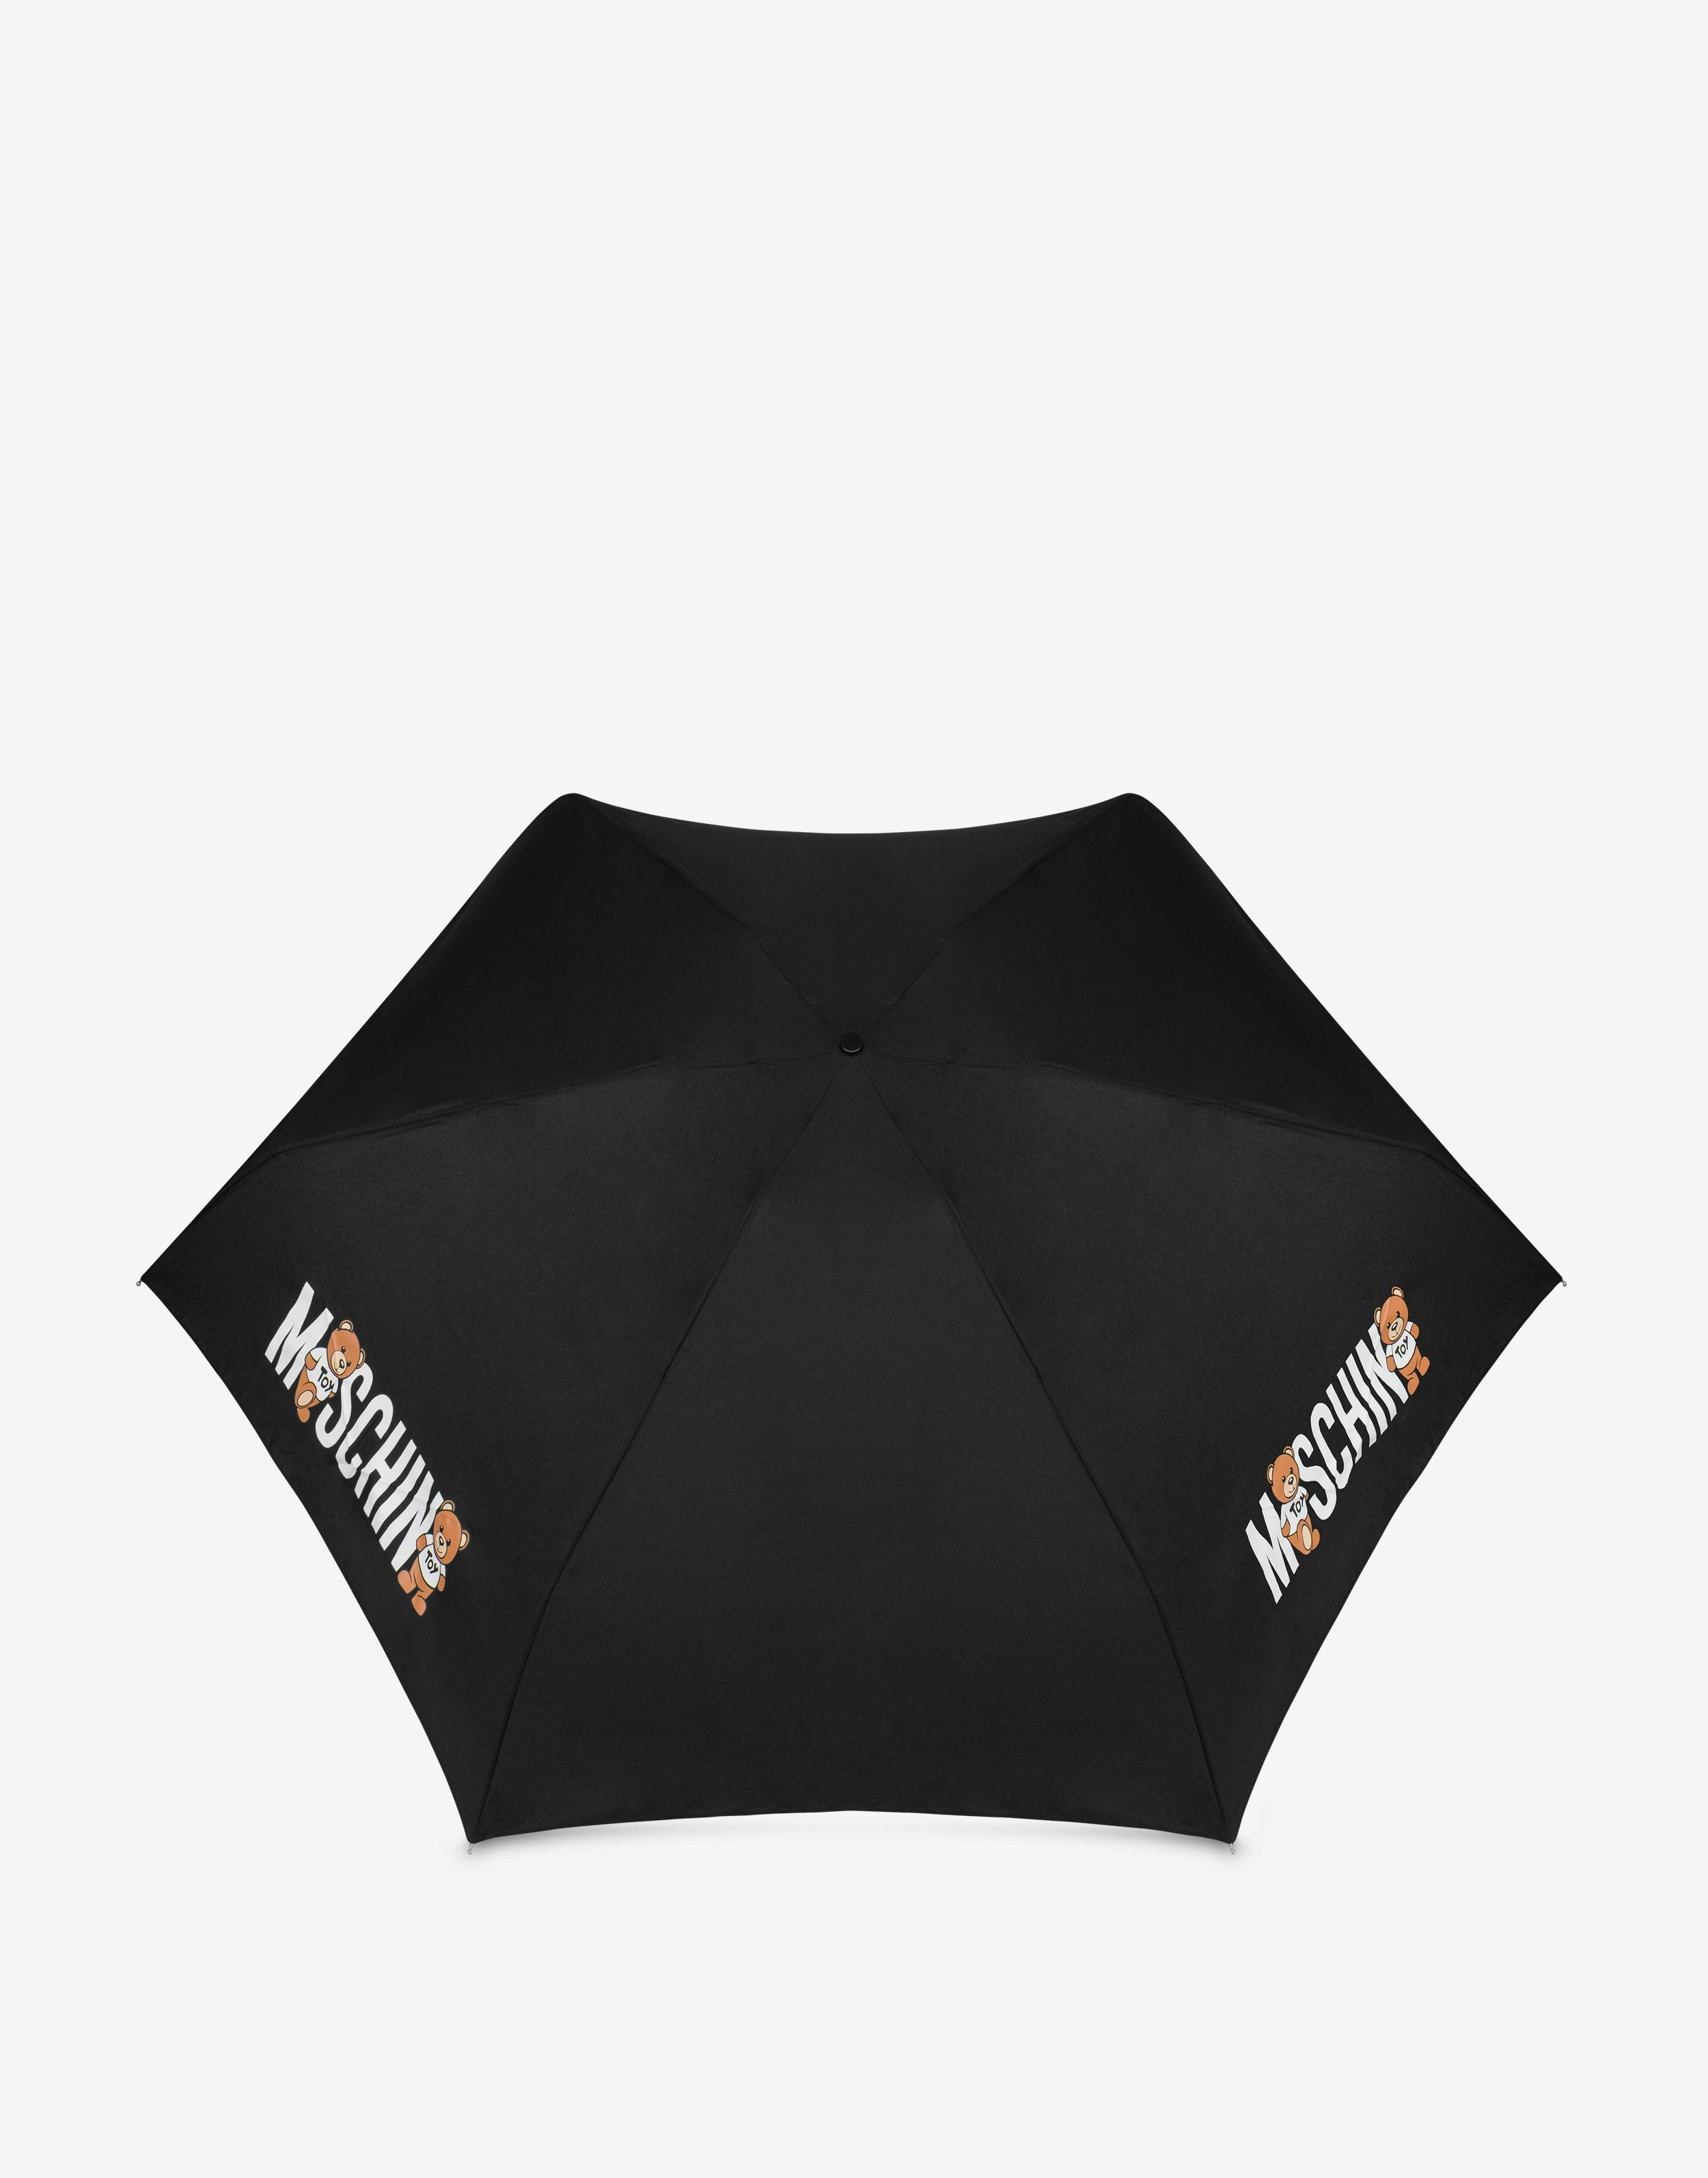 Supermini-Schirm mit Teddy Logo